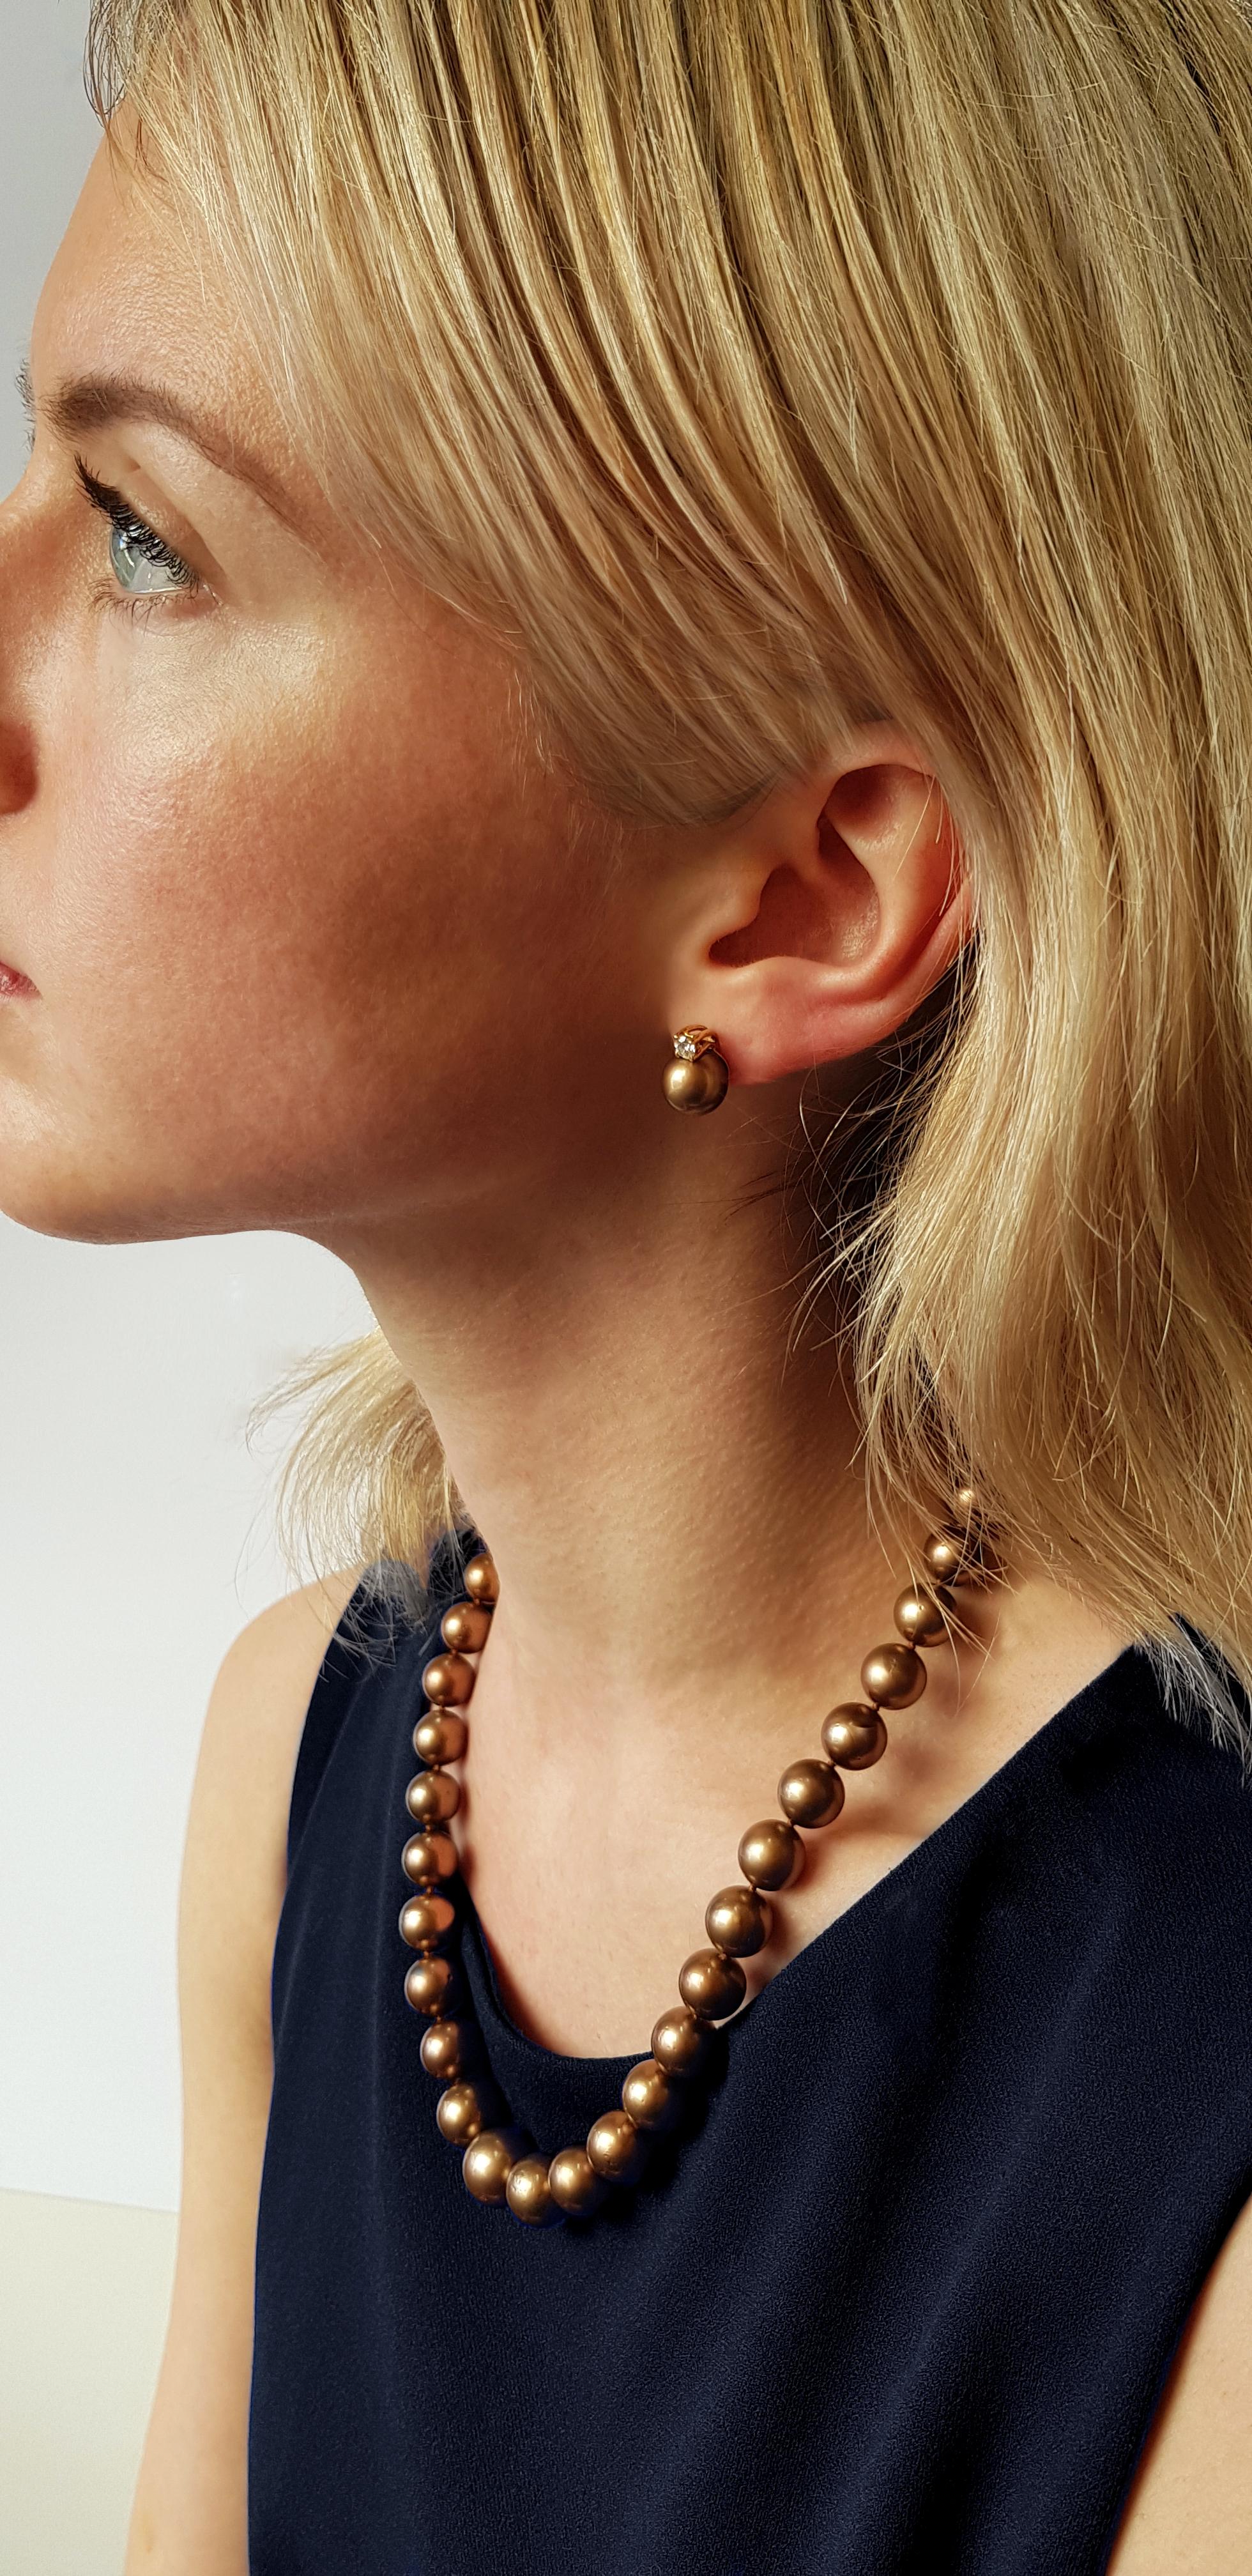 Diese außergewöhnliche Halskette von Yoko London Pearls besteht aus schokoladenfarbenen Tahiti-Perlen, die sanft in der Größe abgestuft sind und von Experten in unserem Londoner Atelier von Hand nach Größe, Farbton und Lüster angepasst wurden. Um